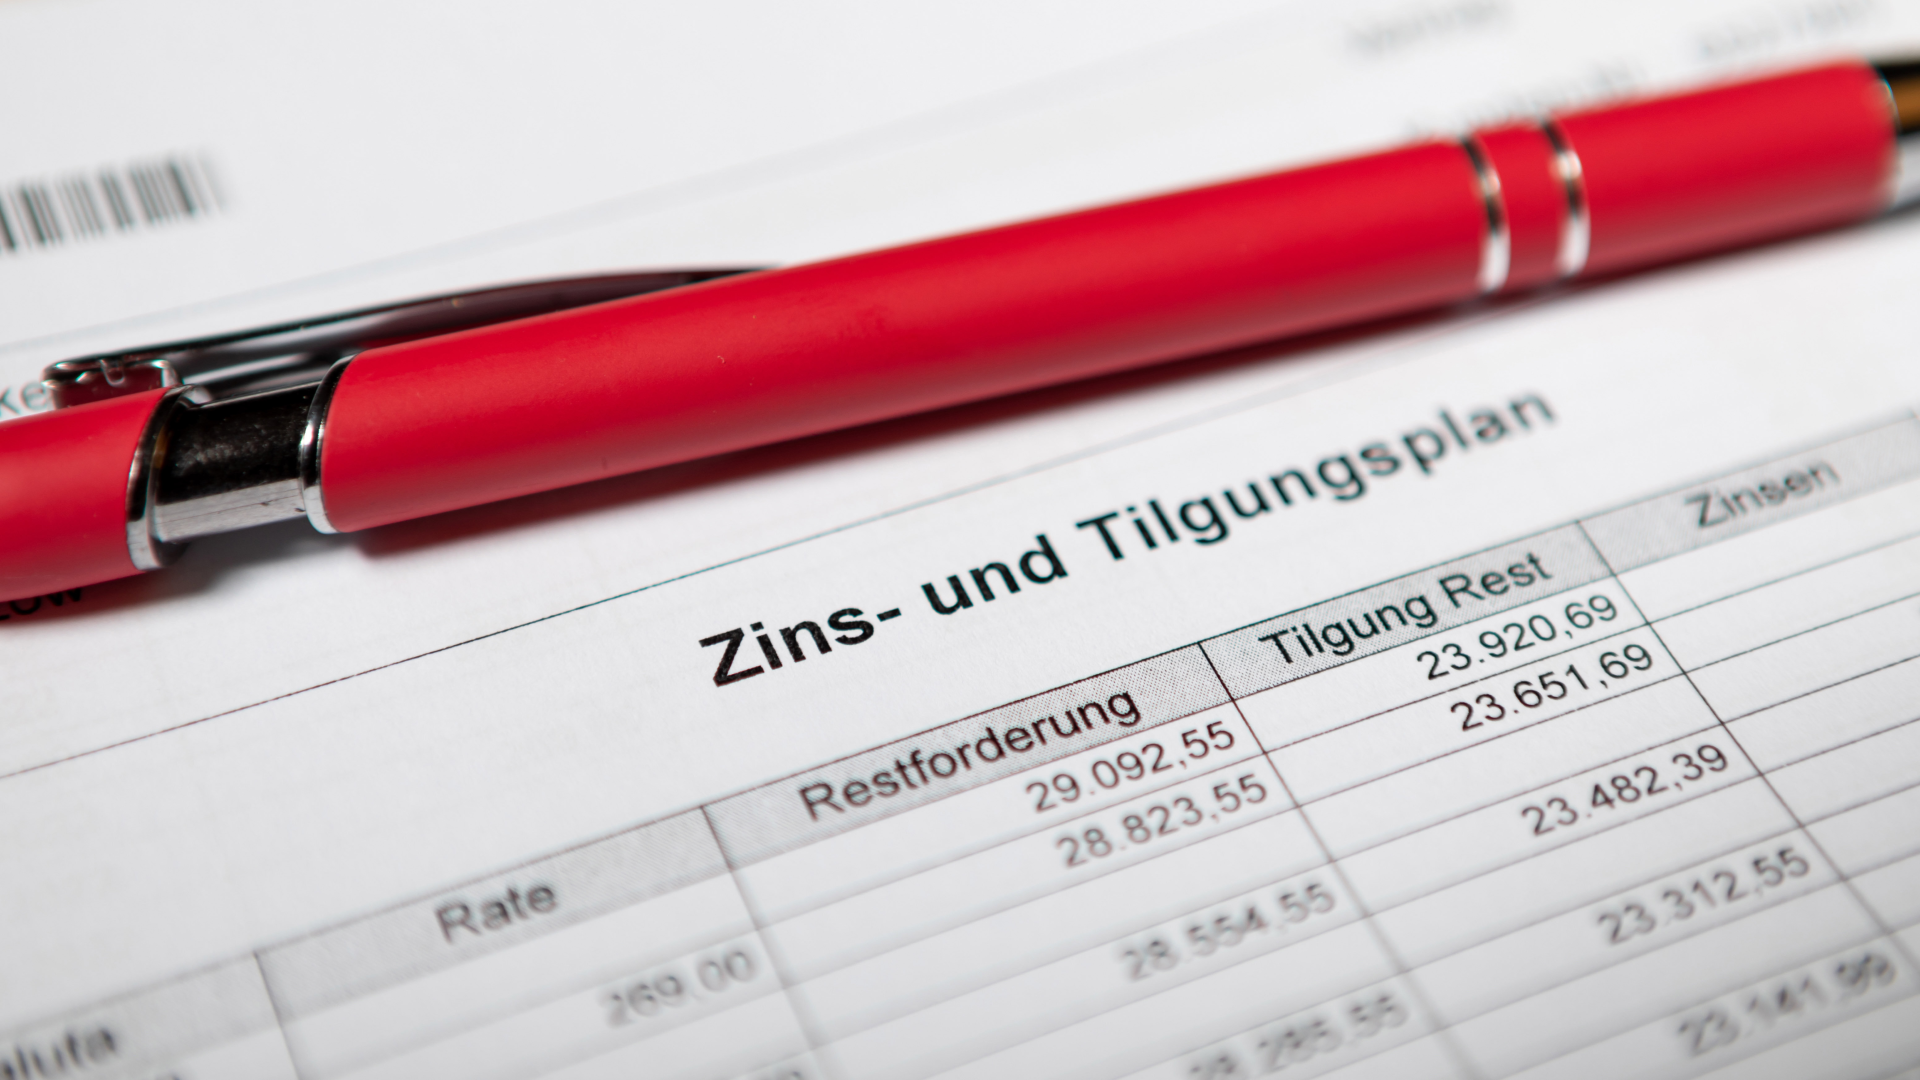 Zins- und Tilgungsplan eines Finanzierungskaufs | Foto: picture alliance / Andreas Franke